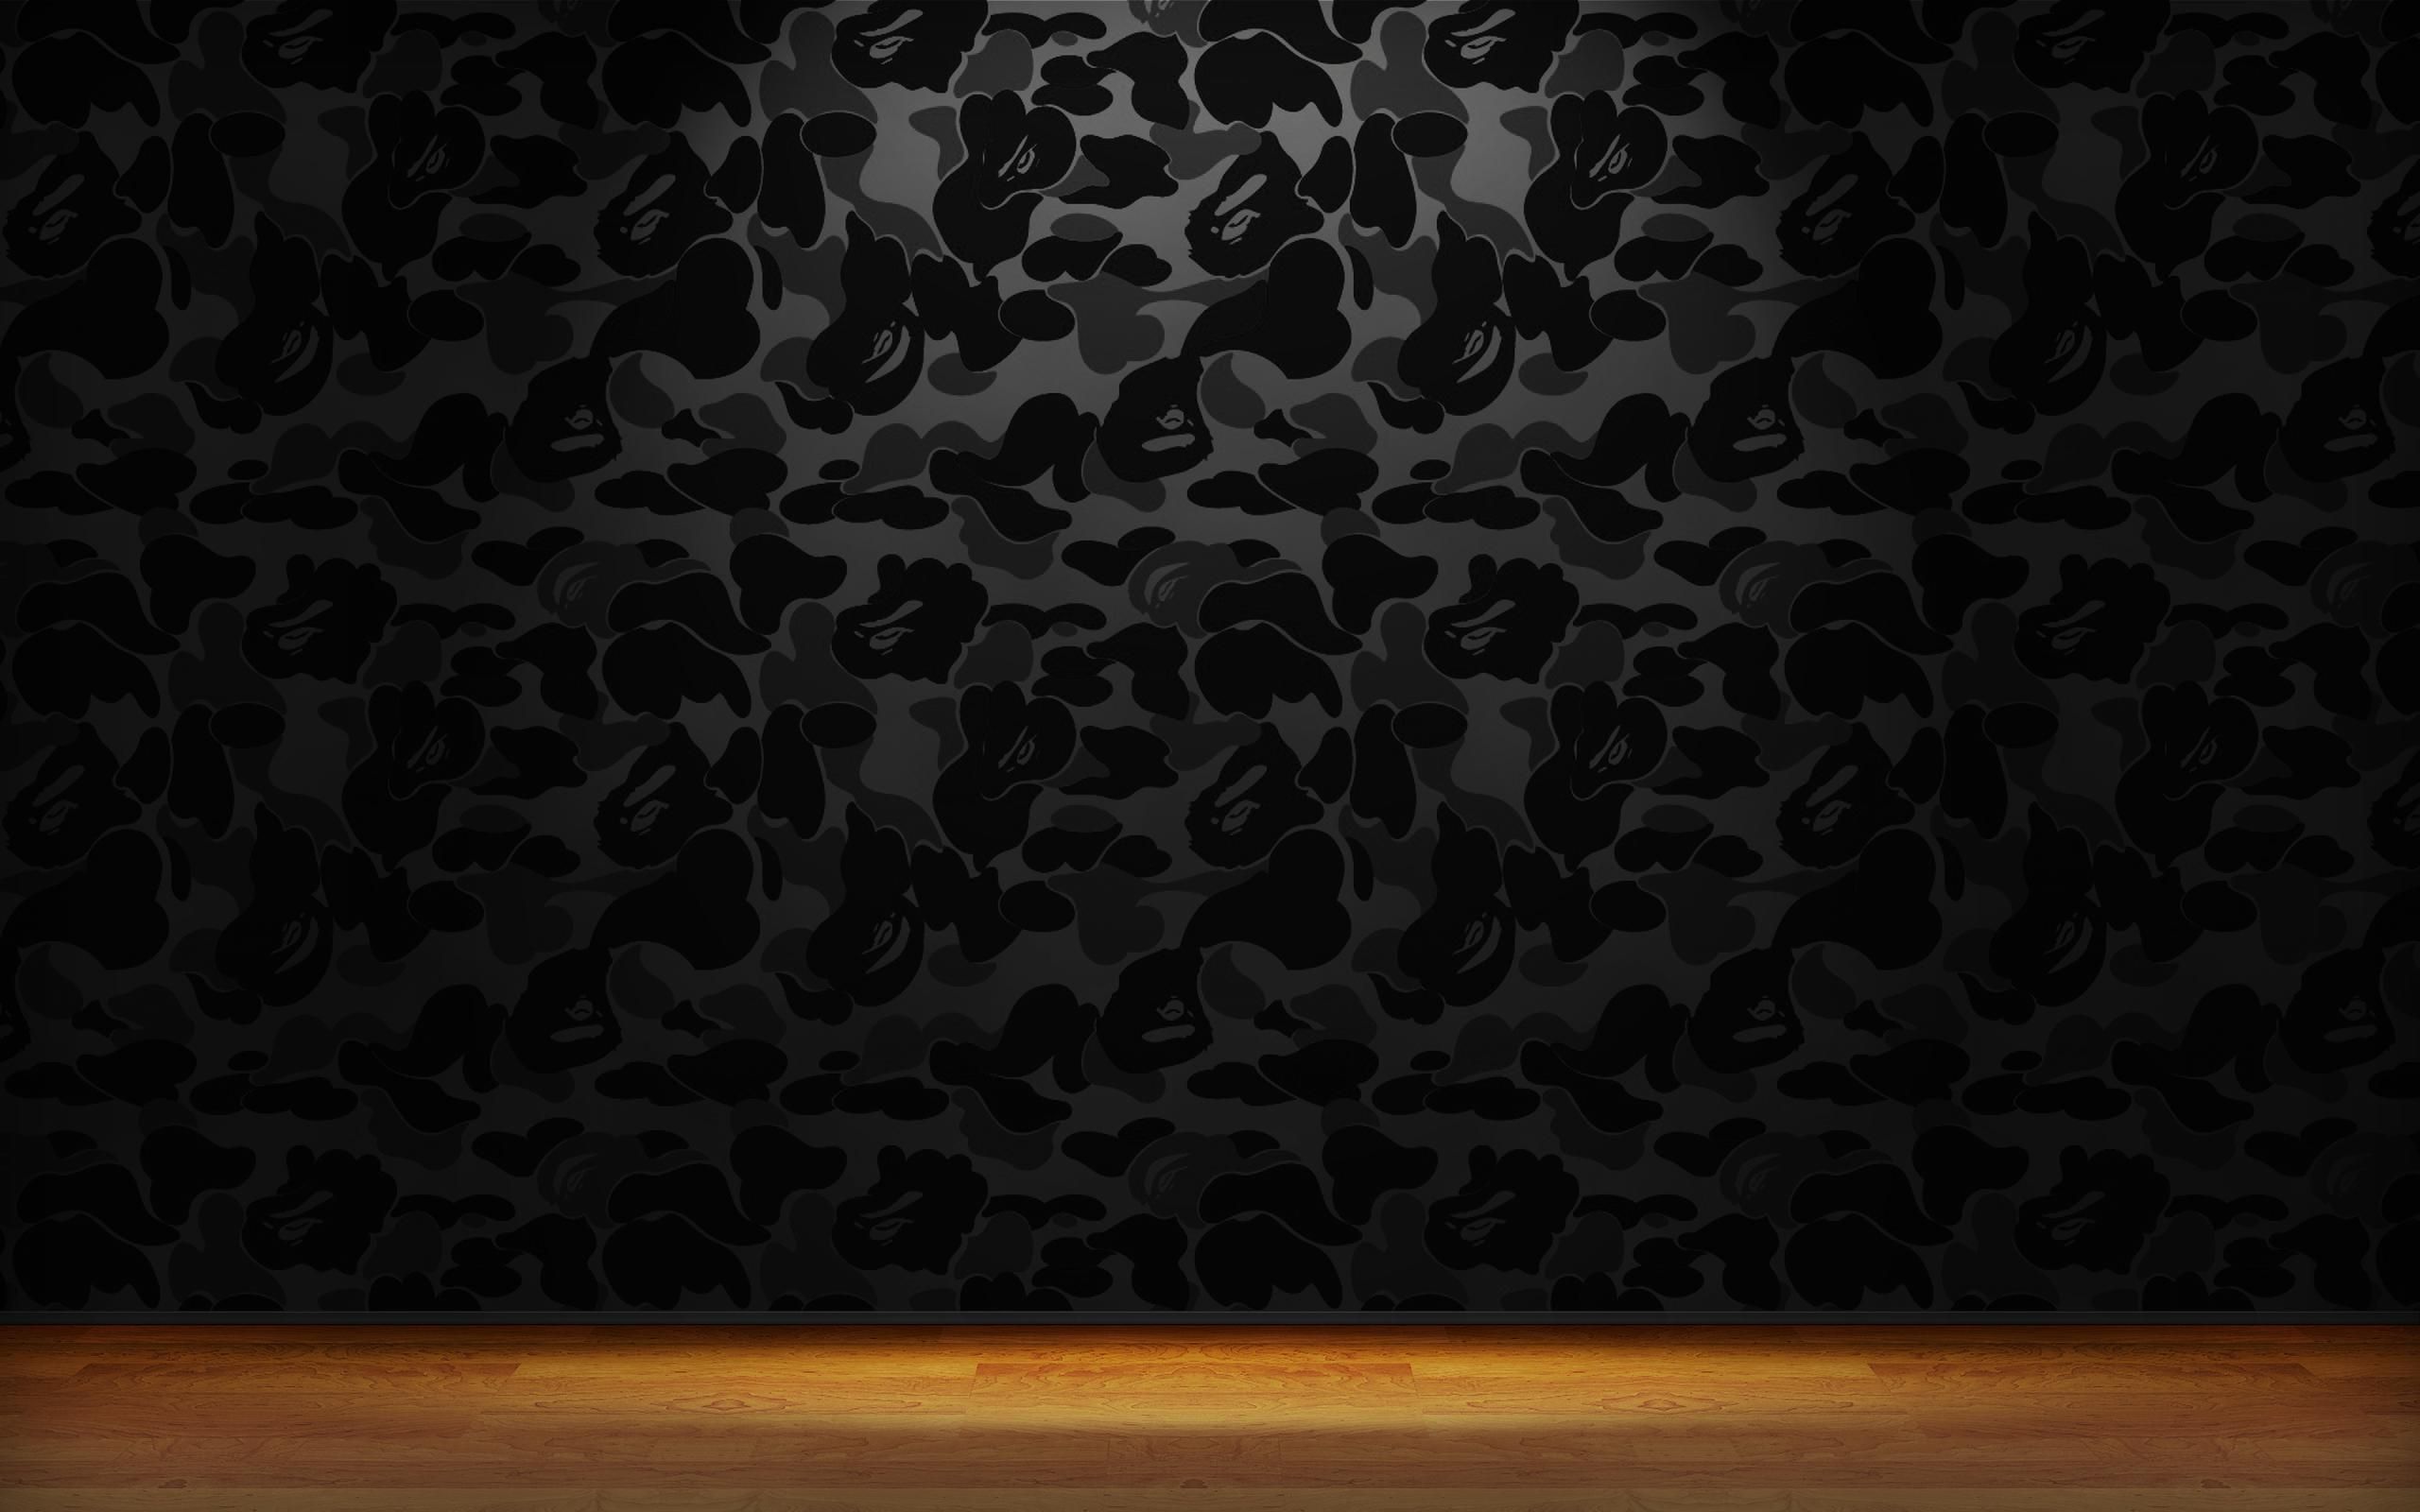 Black Bape Wallpaper On